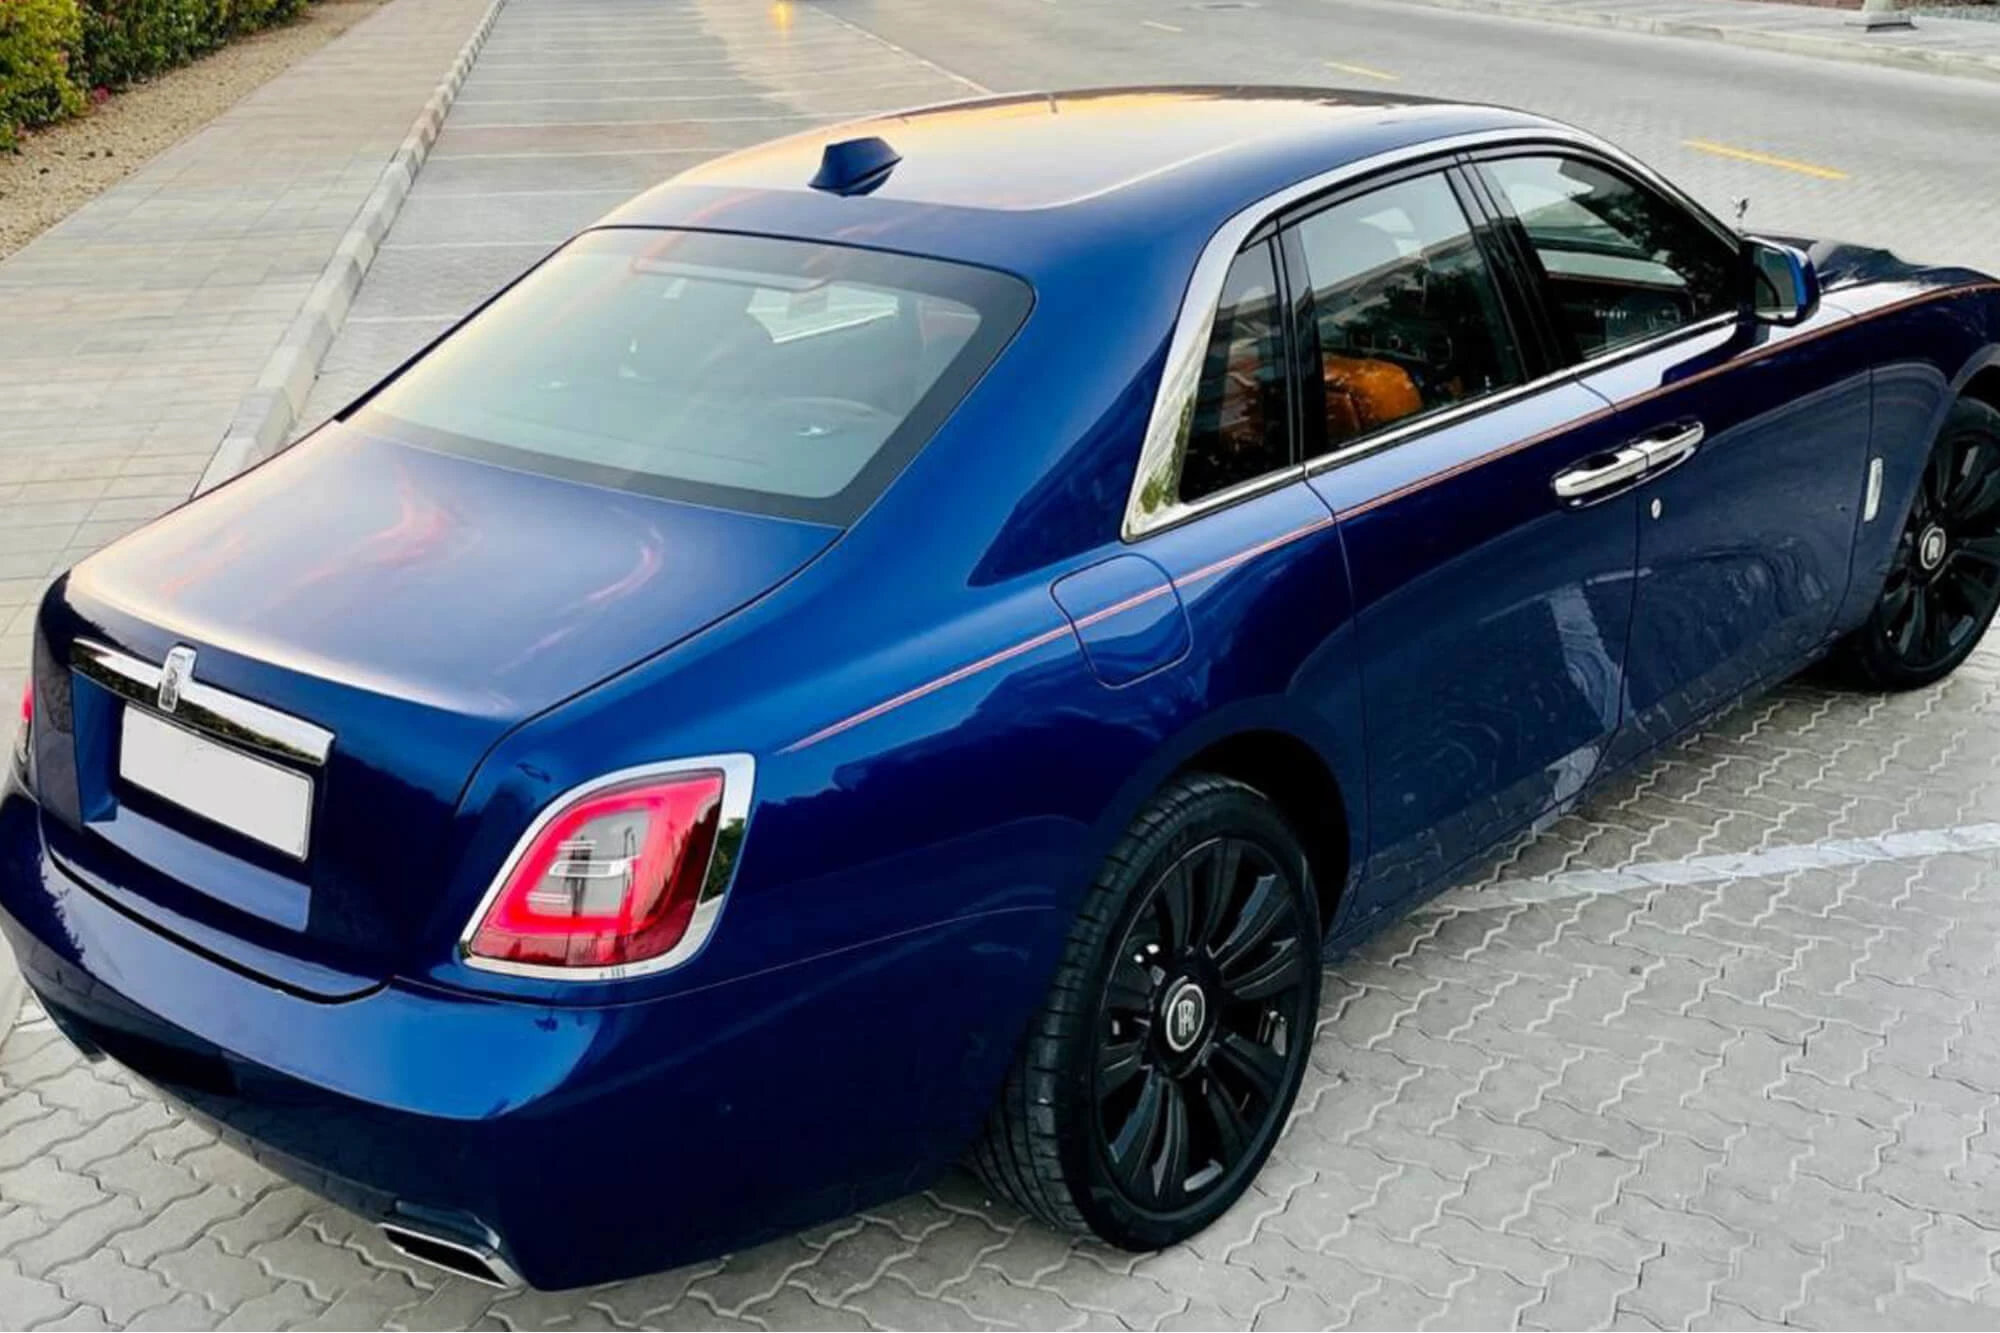 Rolls-Royce Ghost Blå